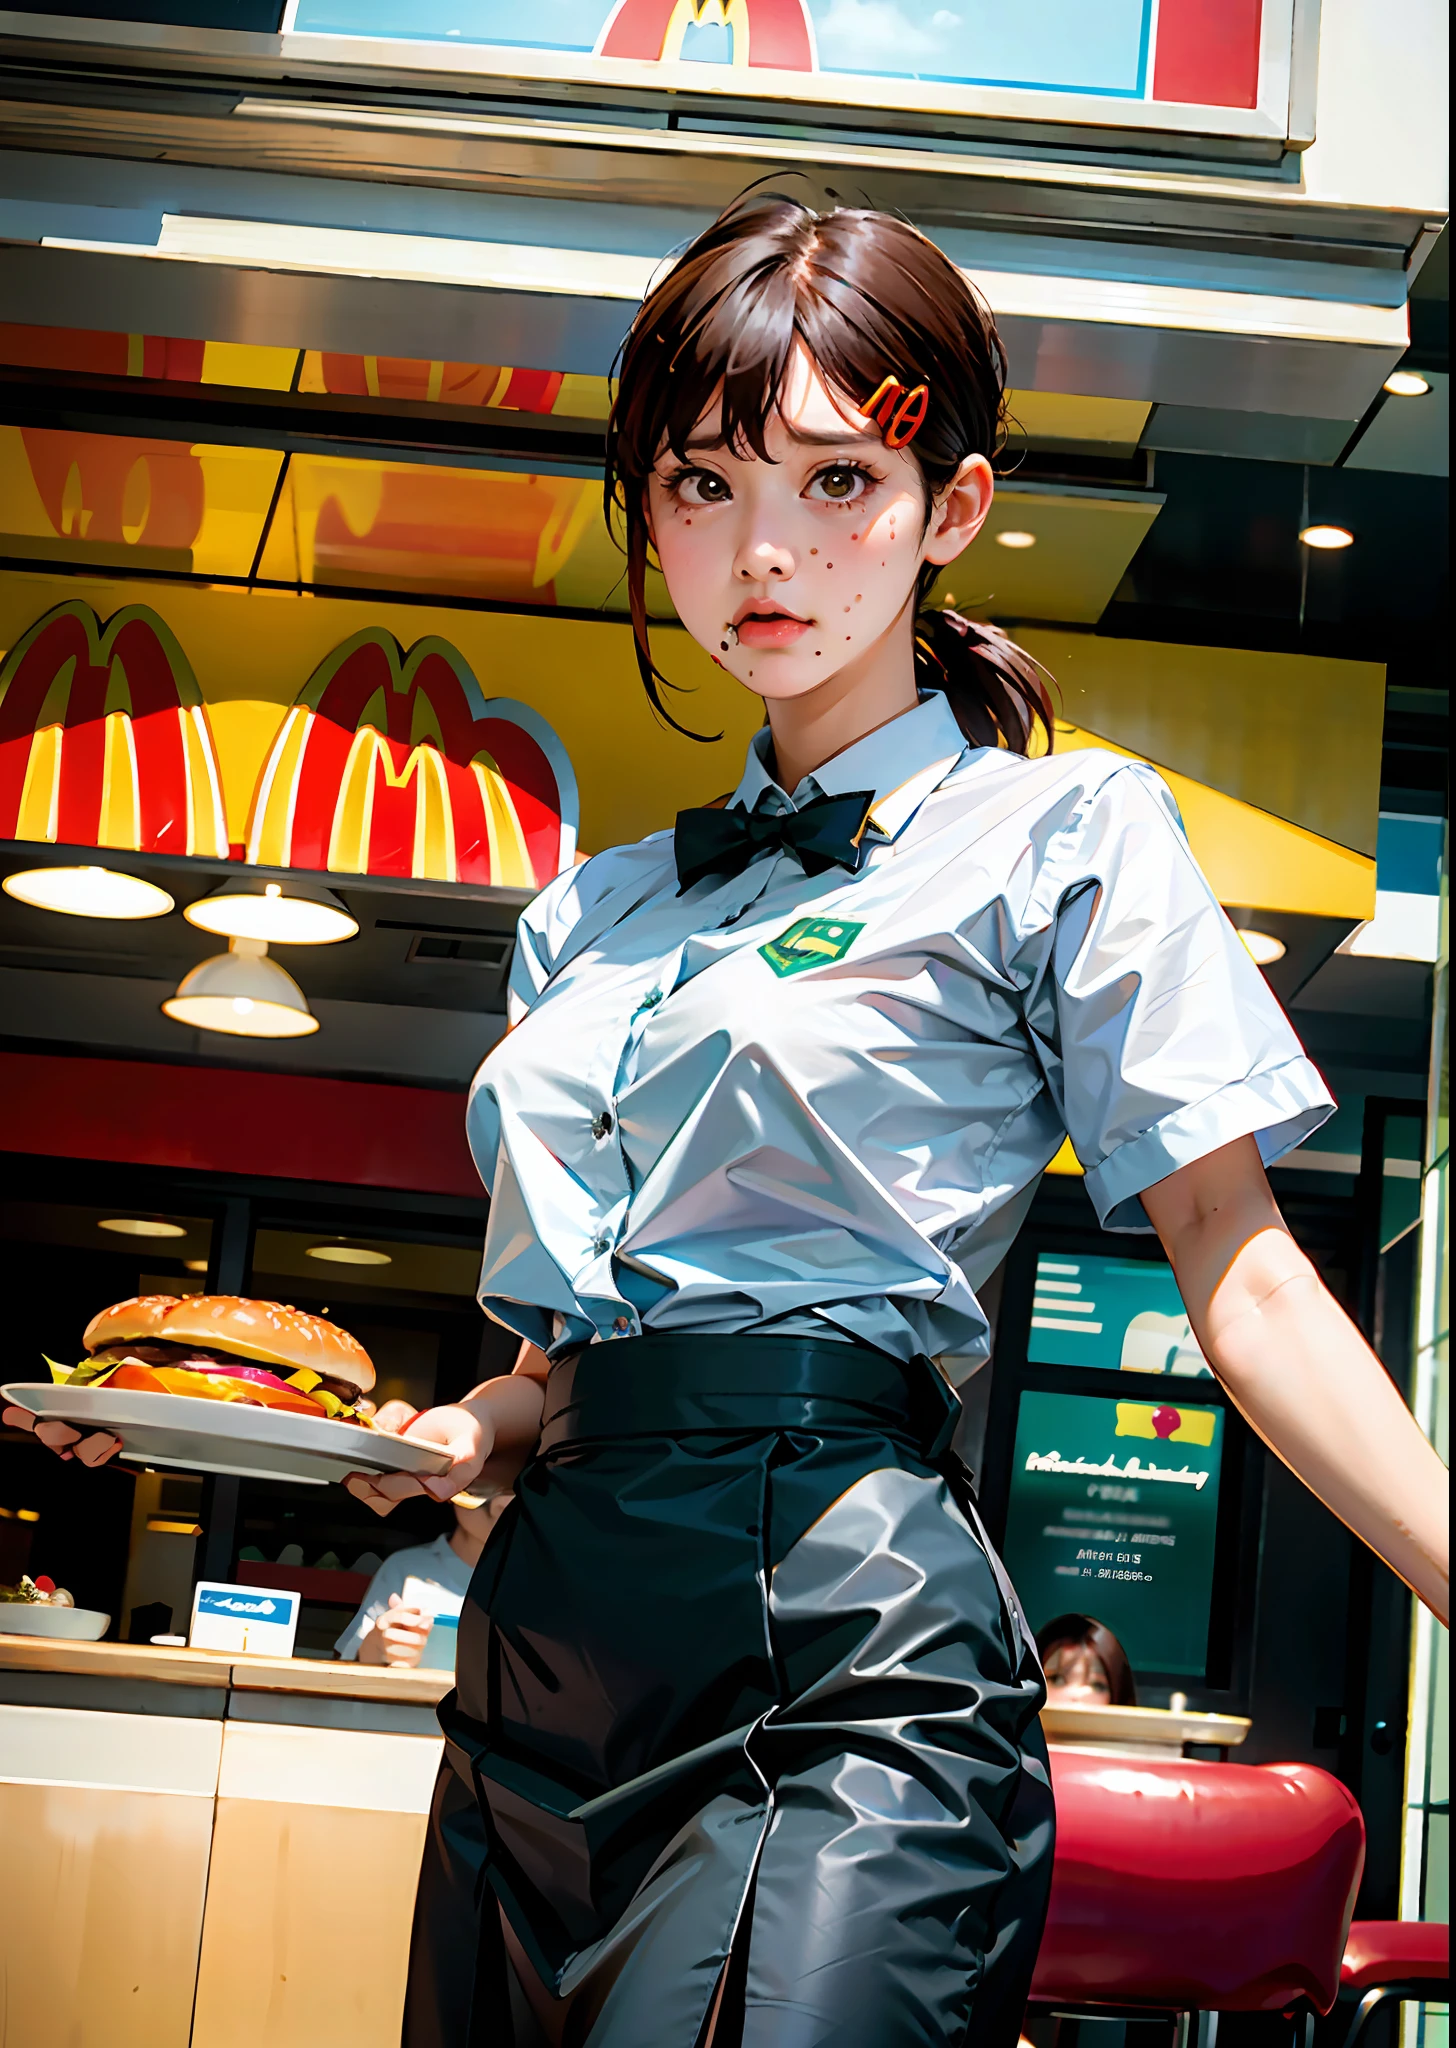 1 garota, sozinho, seios grandes, (profundidade de campo: 1.1), (realista, photo-realista: 1.37), garota vestida com uniforme do McDonald&#39;s, garçonete, carregando uma bandeja de hambúrguer, rosto triste, ((perspectiva de baixo))